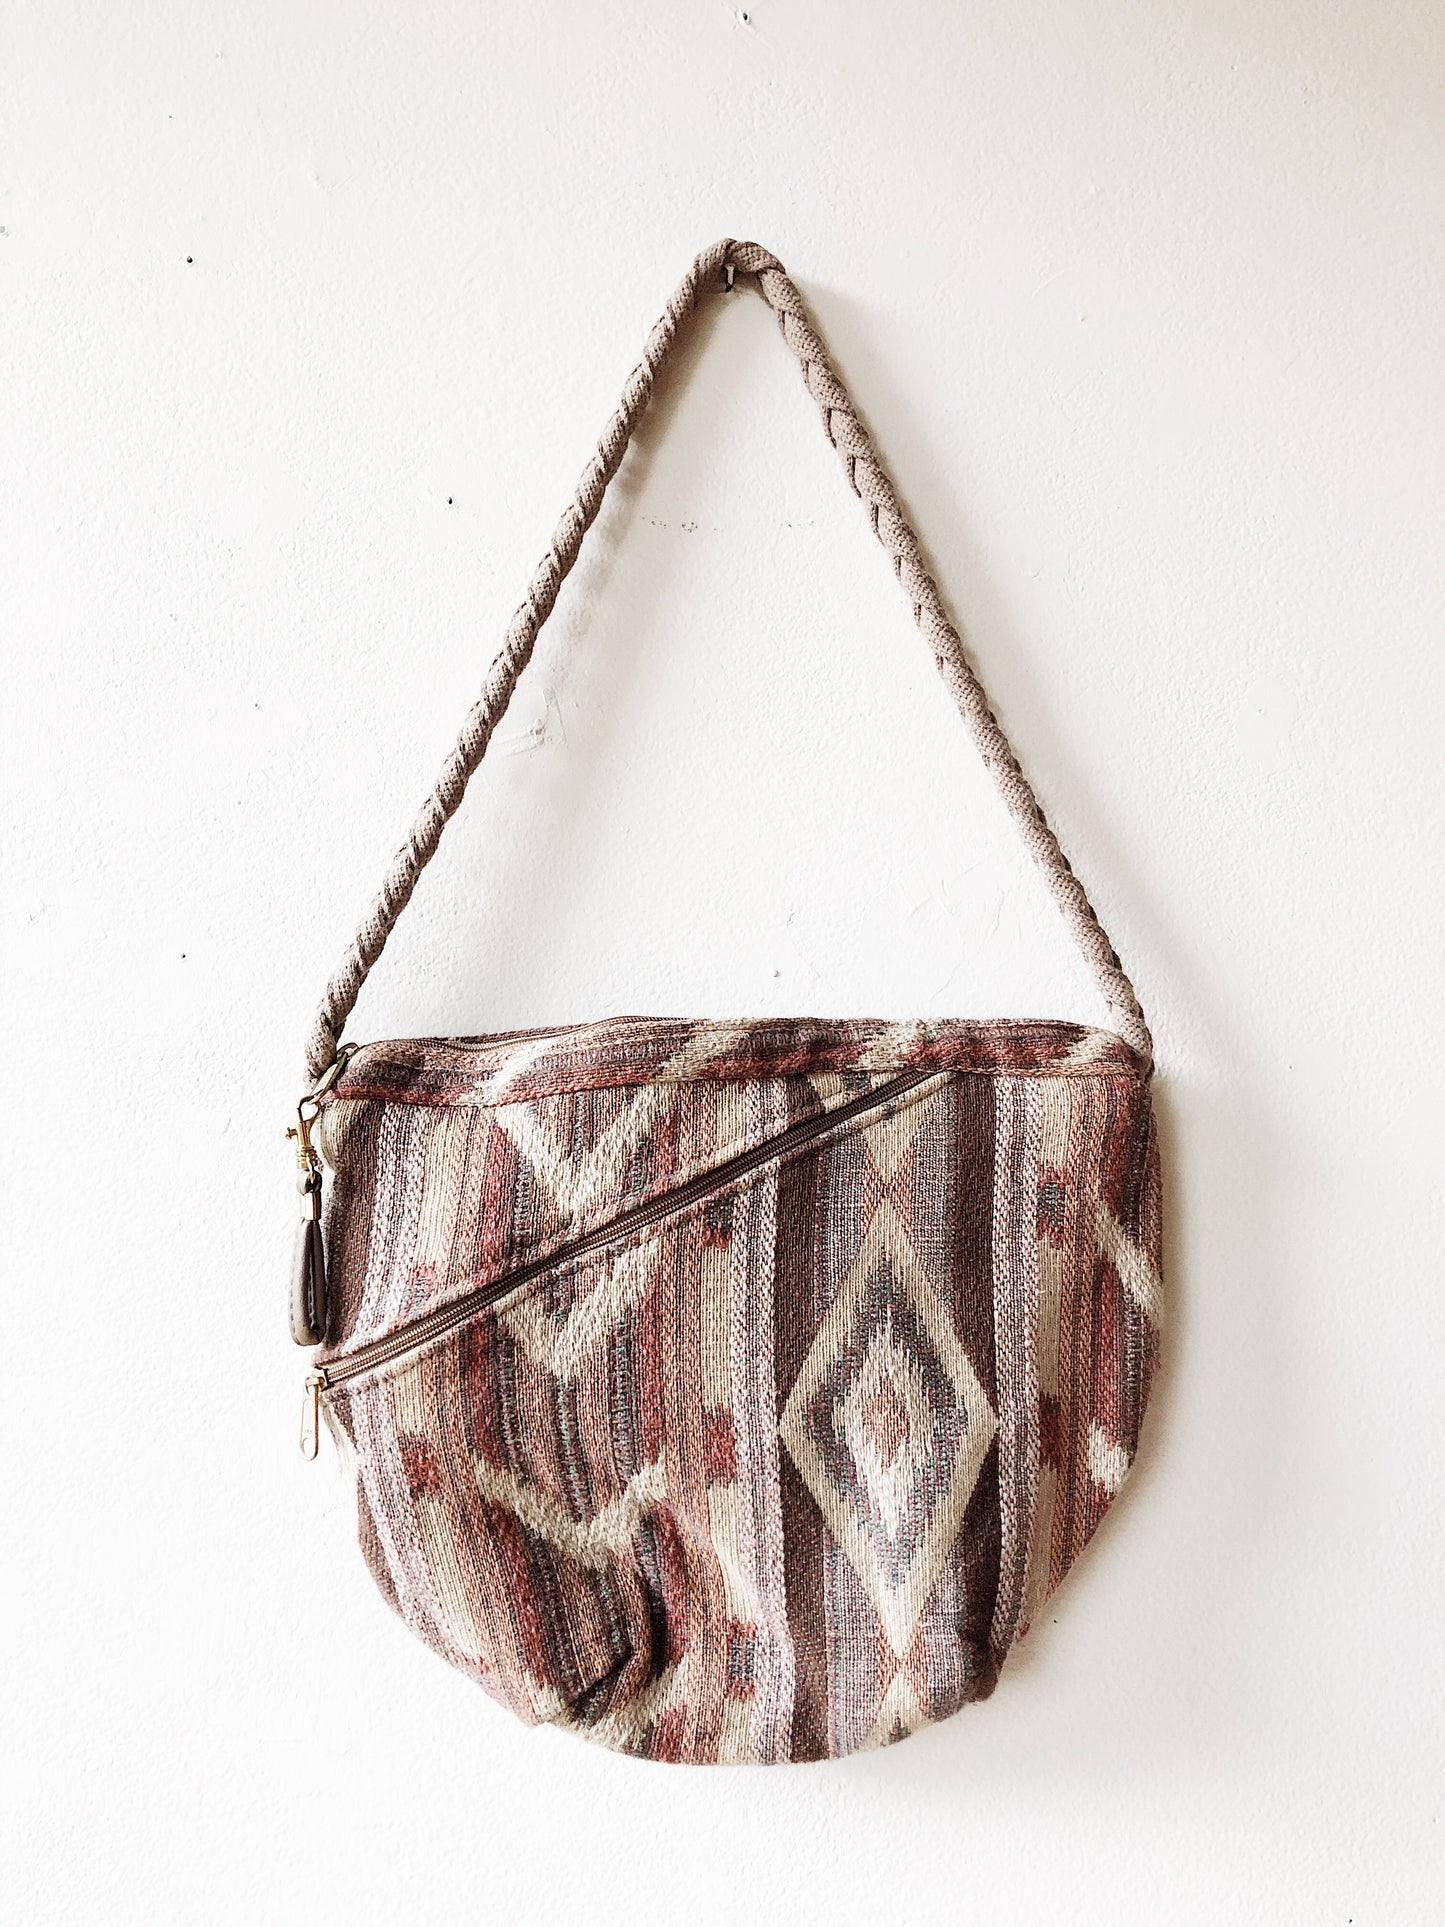 Vintage Woven Cotton Bag